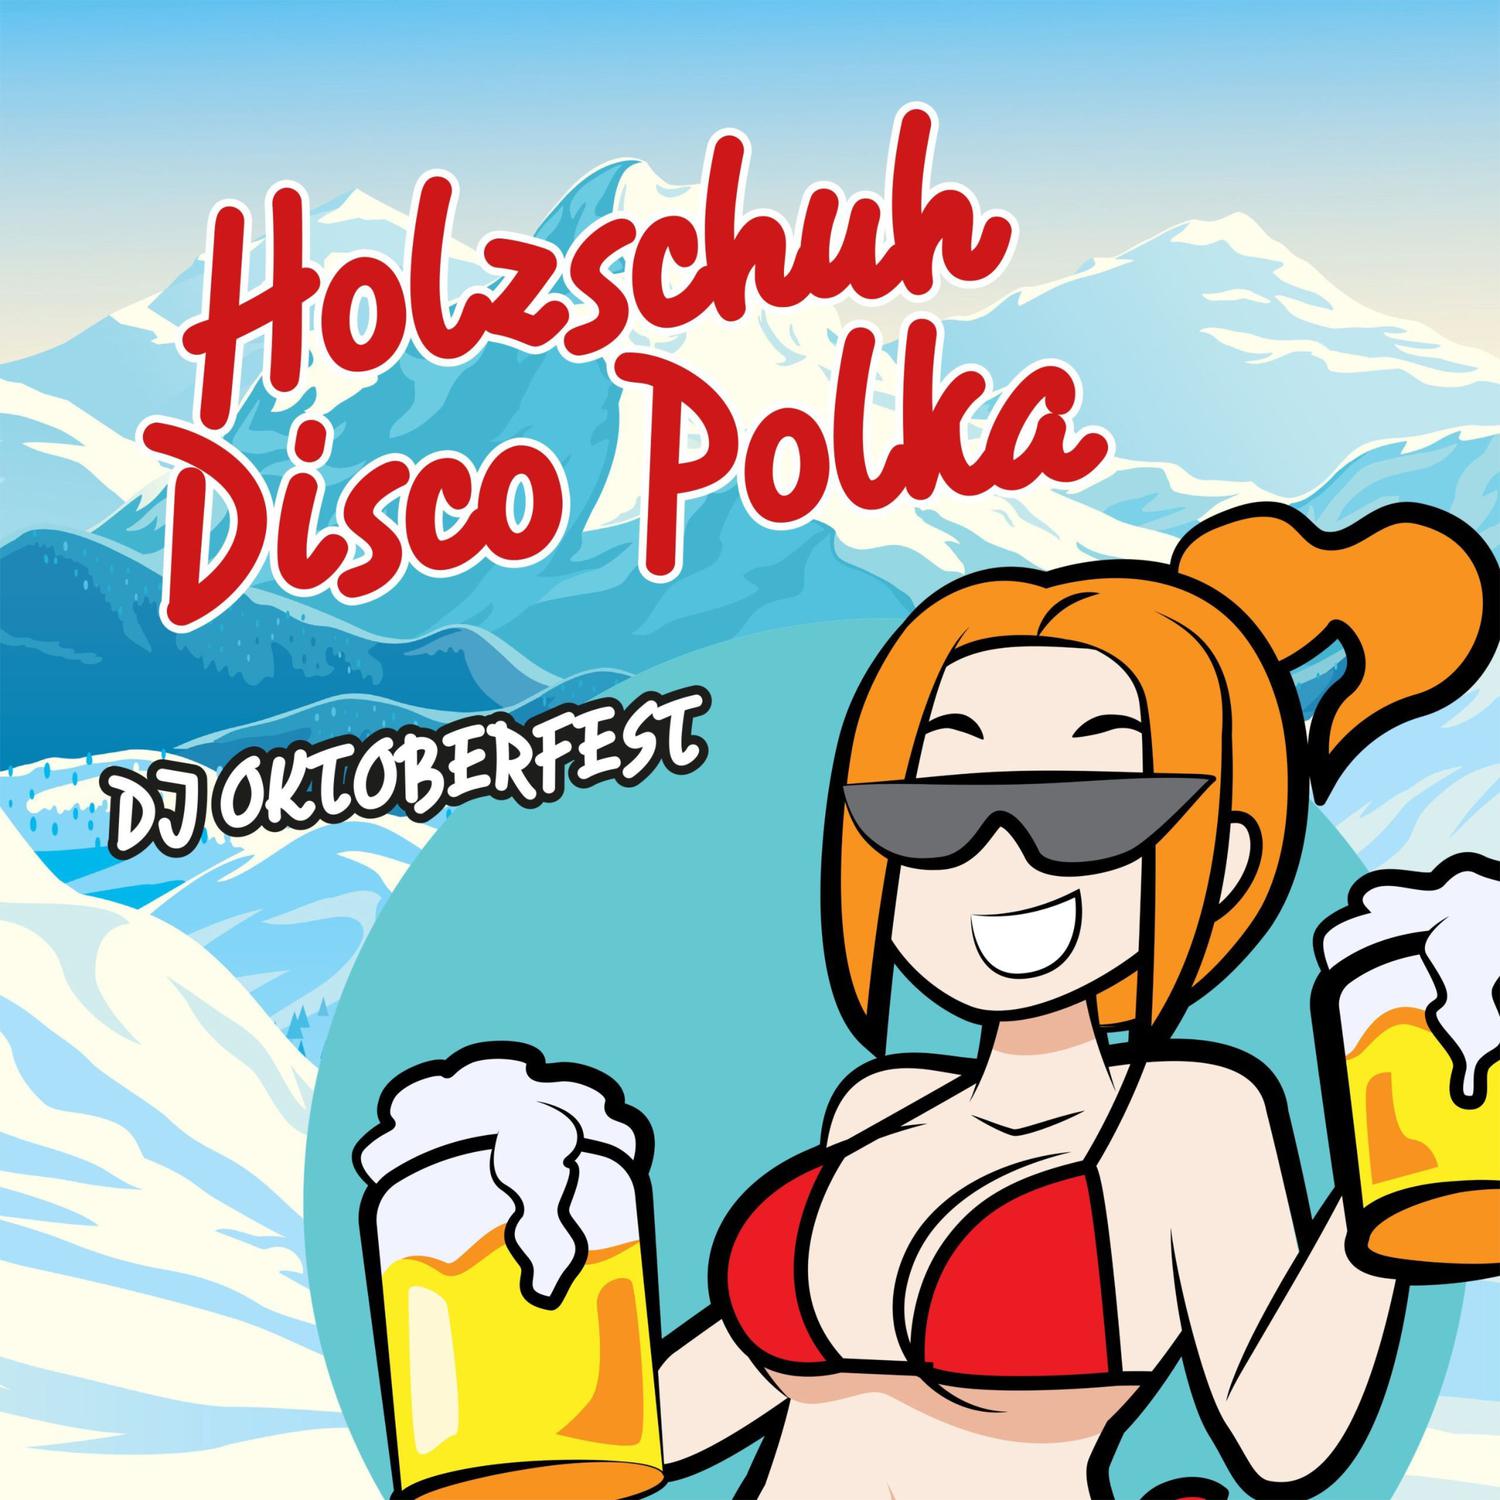 DJ Oktoberfest - Holzschuh disco polka